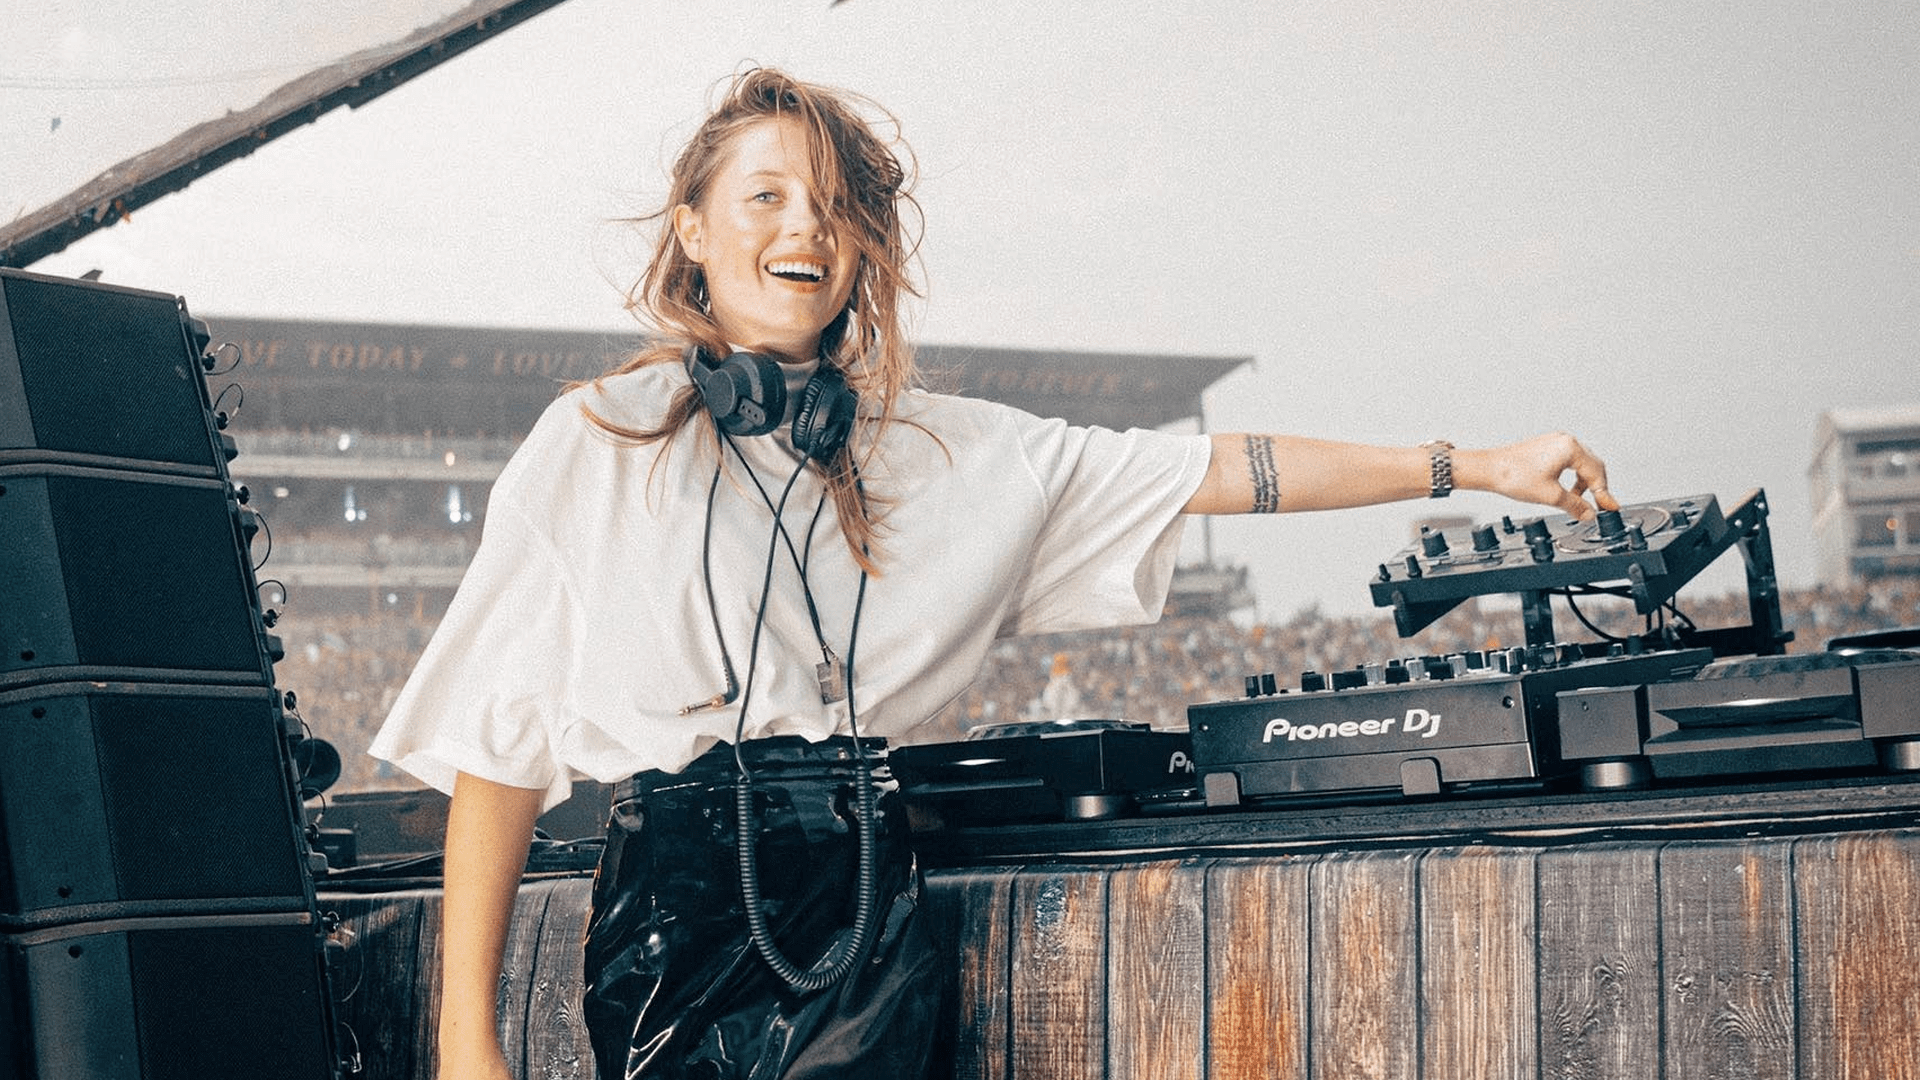 Charlotte de Witte en DJ set en festival